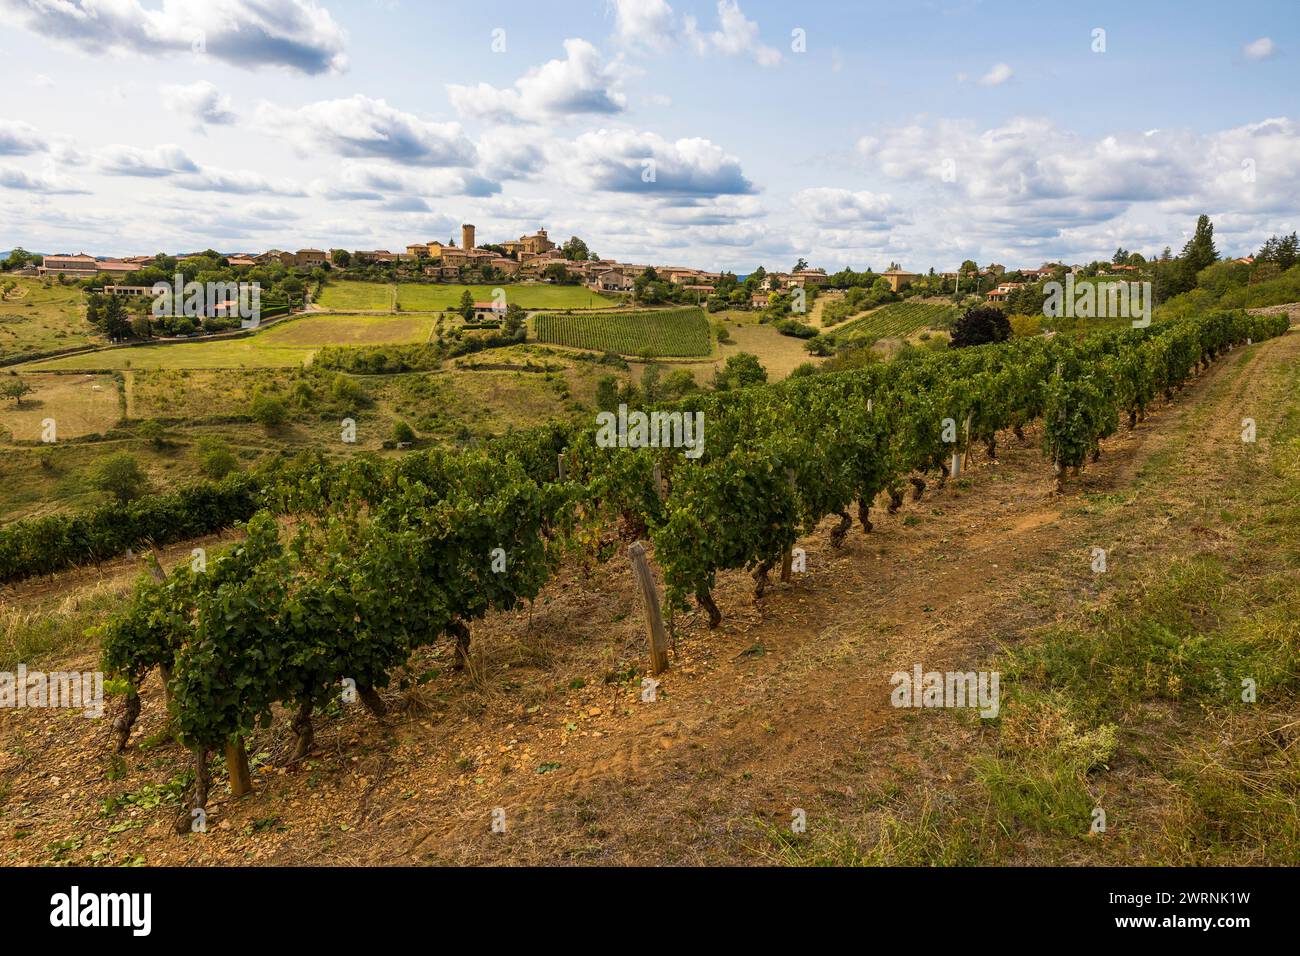 Village médiéval d’Oingt construit en pierres dorées typique de cette région du Beaujolais depuis les vignobles aux alentours Foto Stock